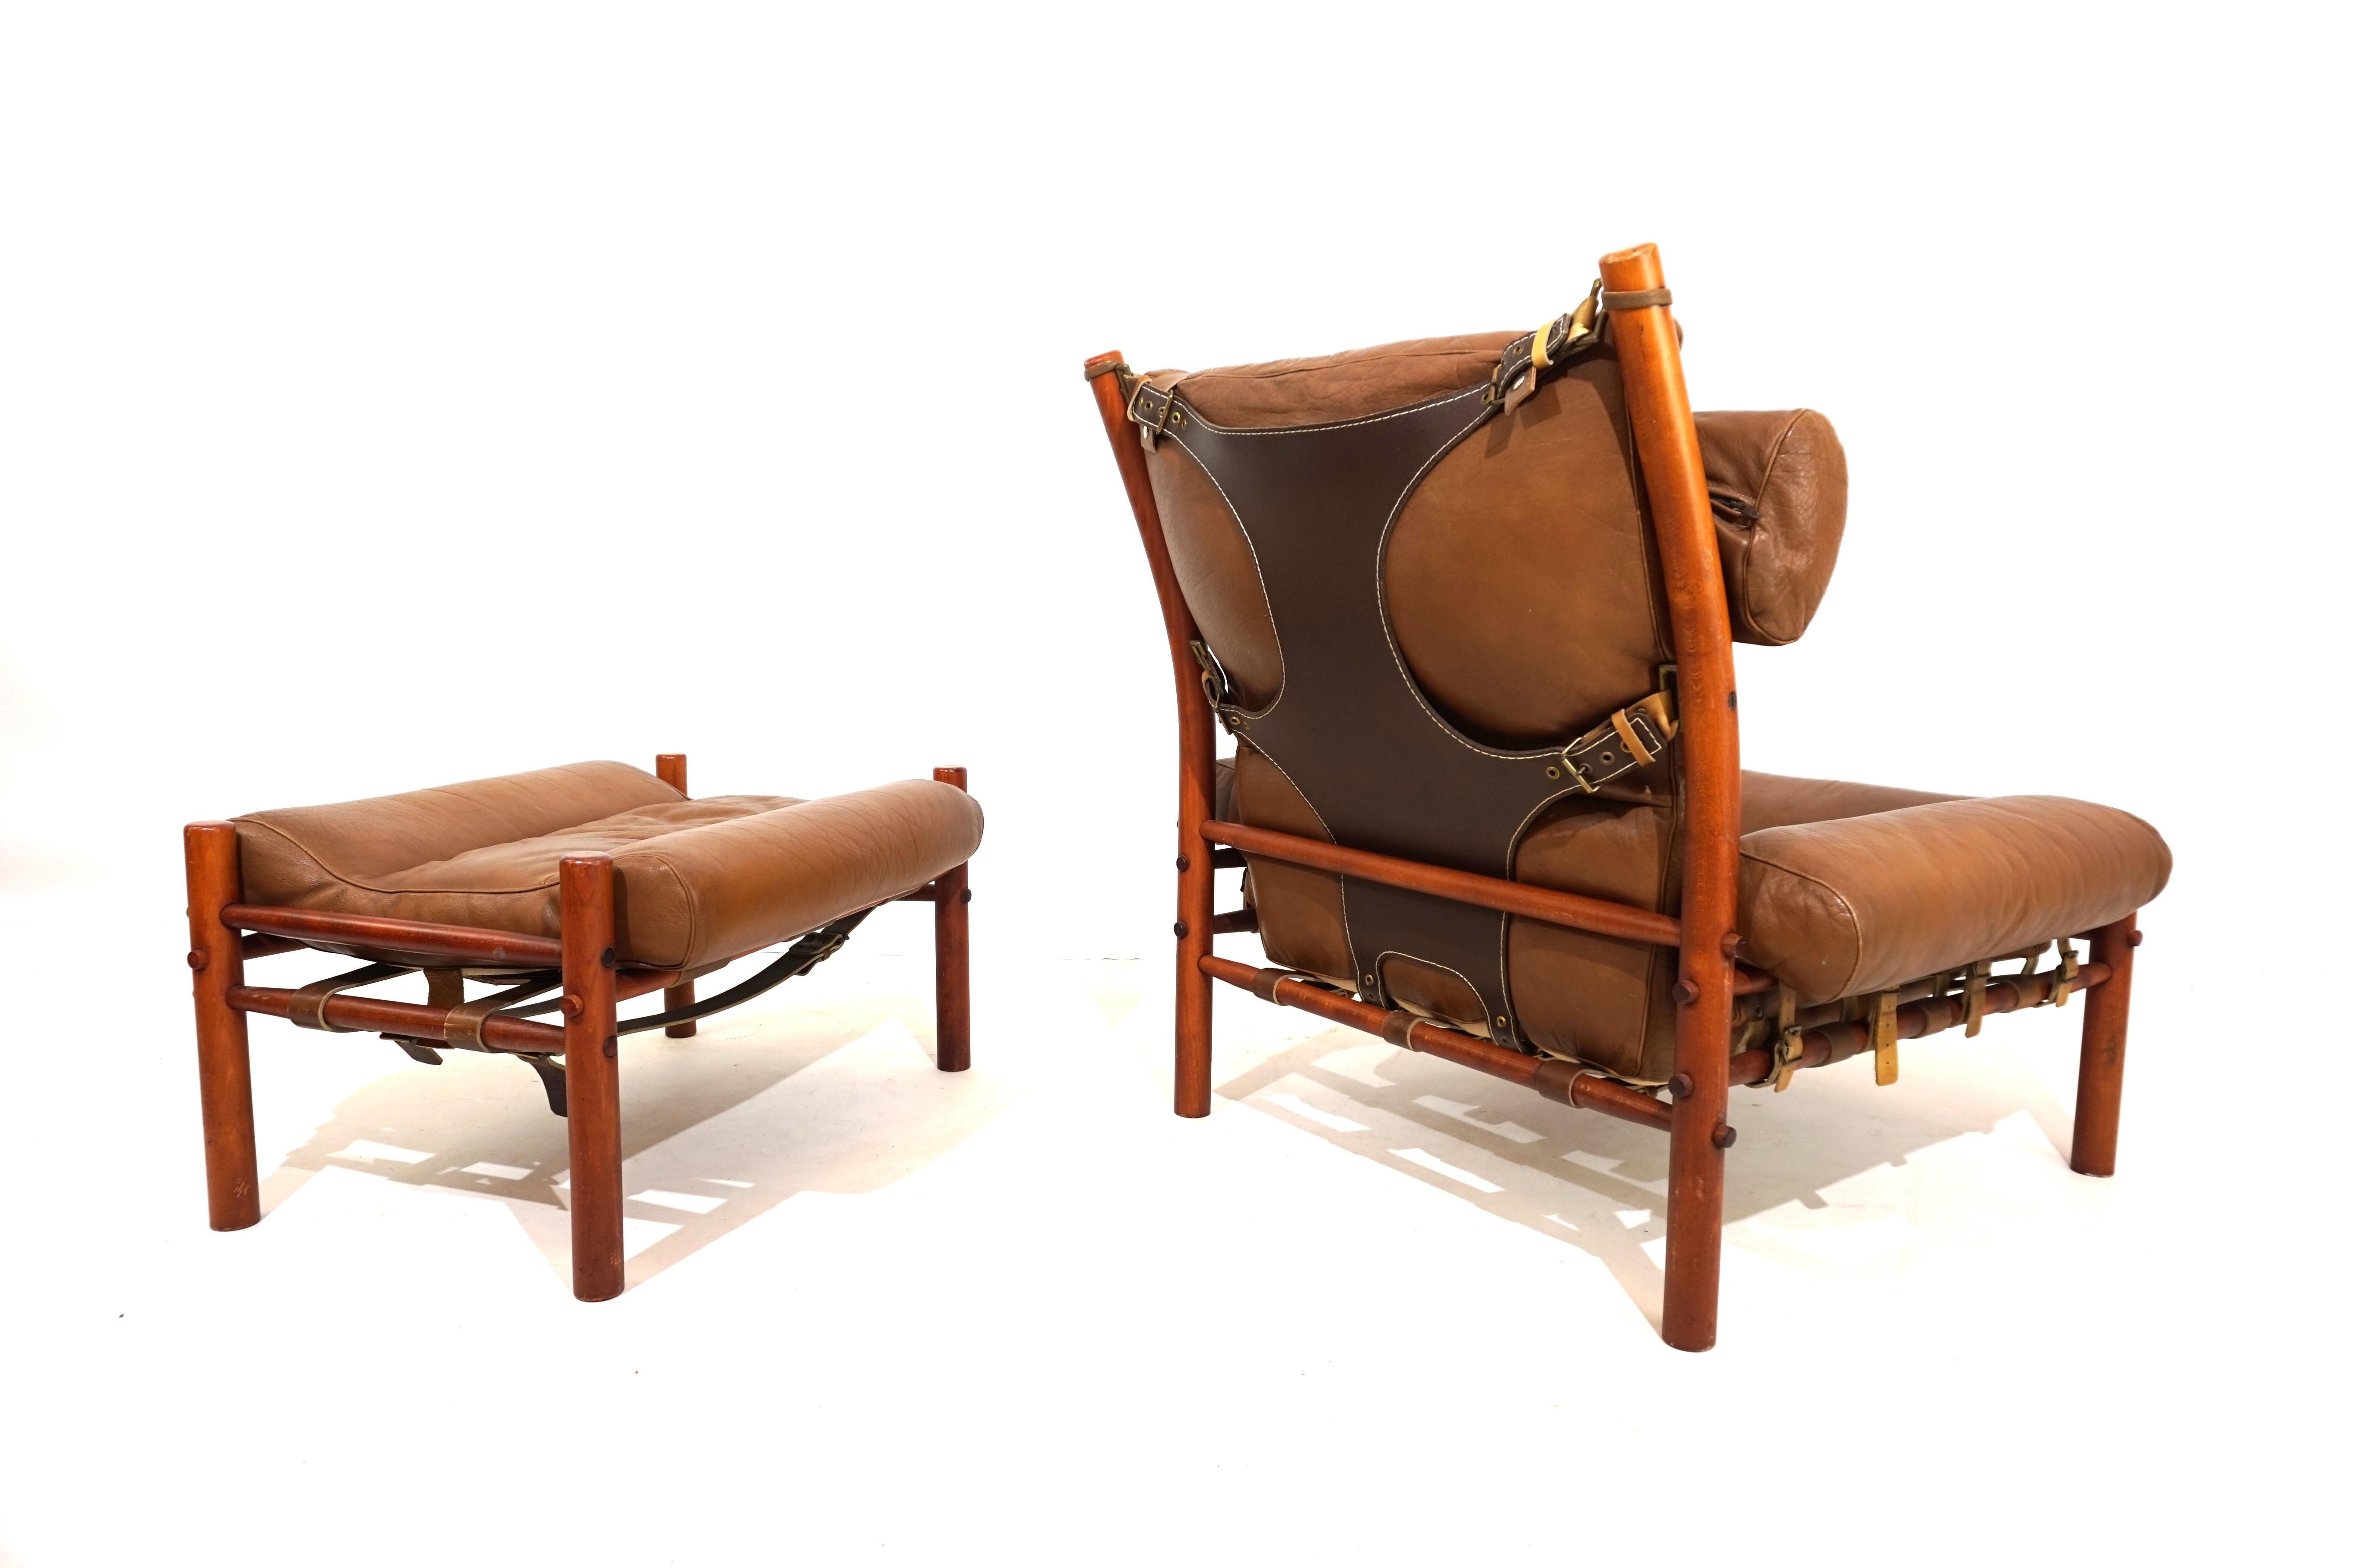 Ce fauteuil Inka avec ottoman en cuir aniline de couleur caramel avec un dos en cuir résistant de couleur marron foncé est en excellent état. Le cuir d'origine du fauteuil et de l'ottoman est impeccable, toutes les attaches et les sangles en cuir